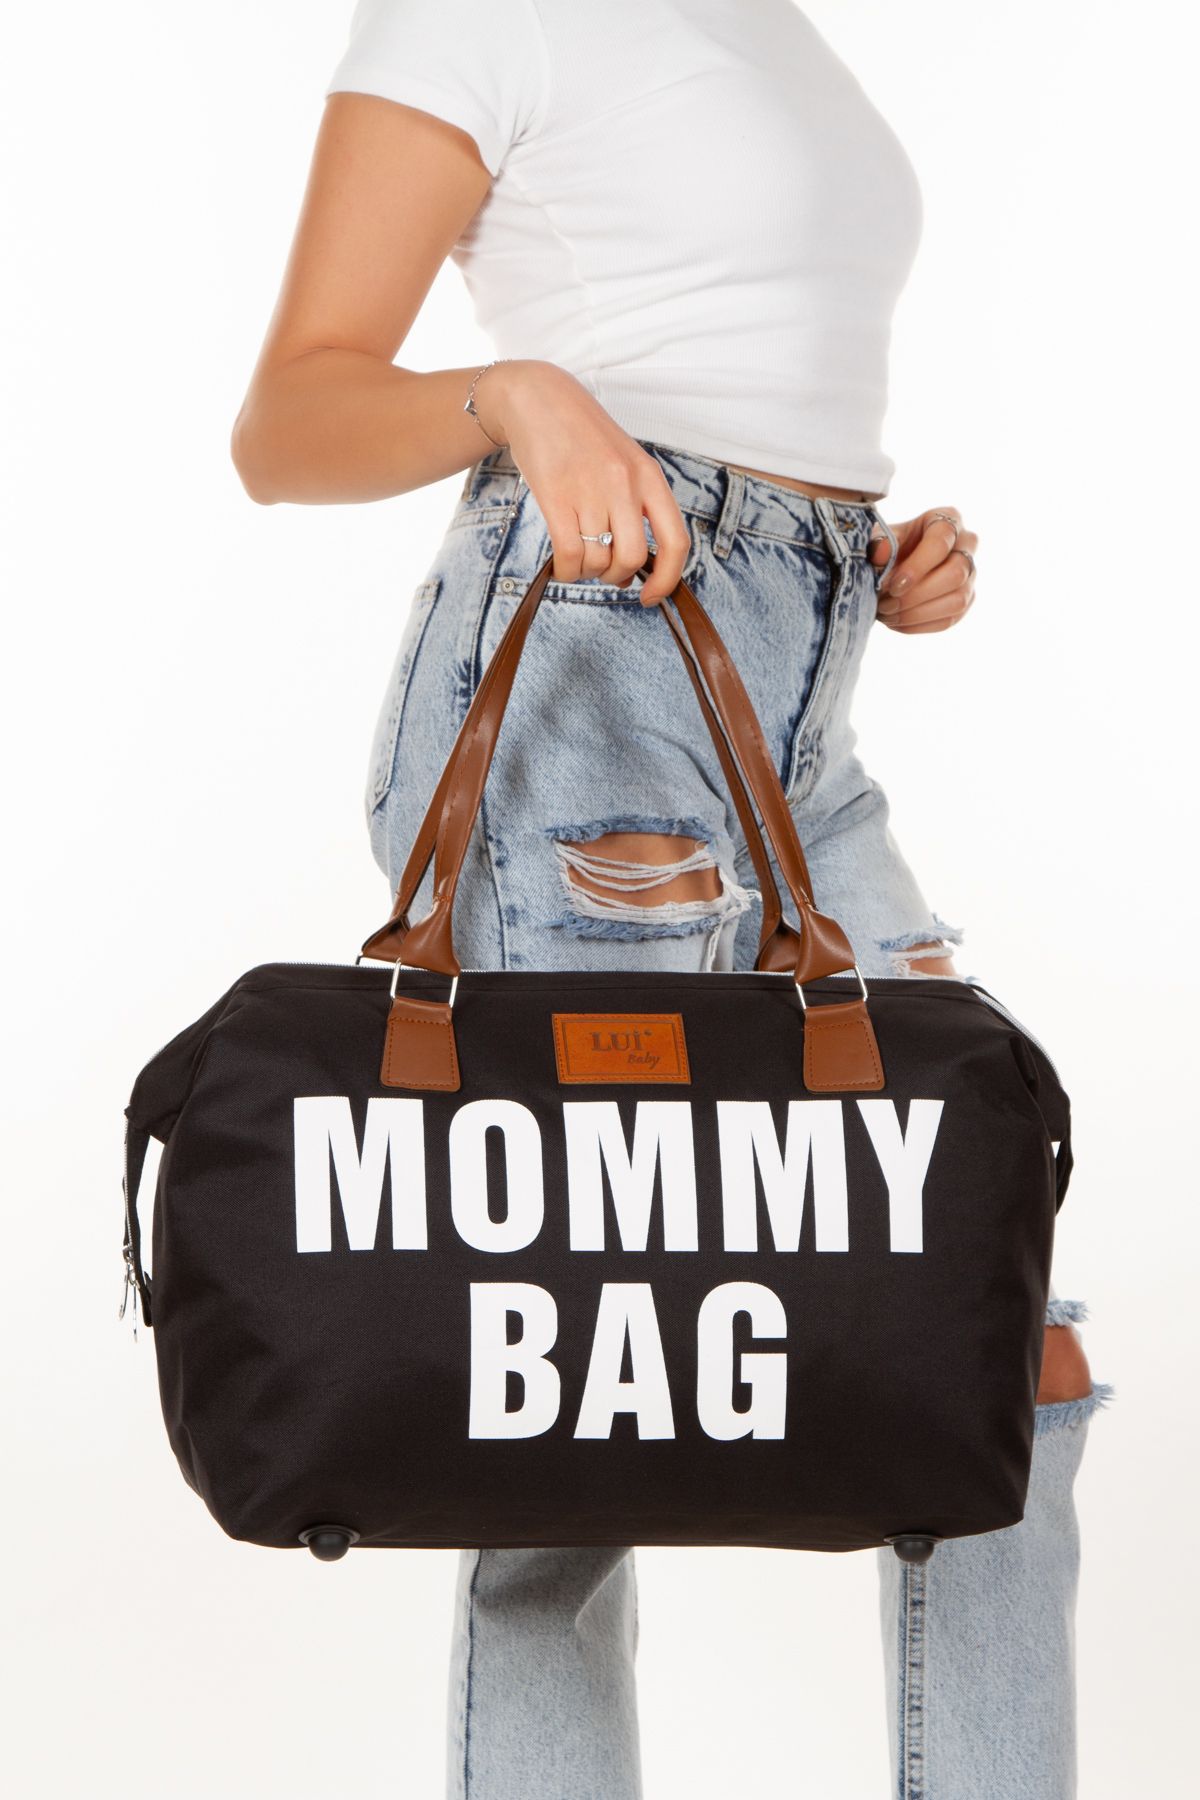 Lui Baby Mommy Bag Mommy Bag Anne Bebek Bakım Çantası Termal Biberonlu